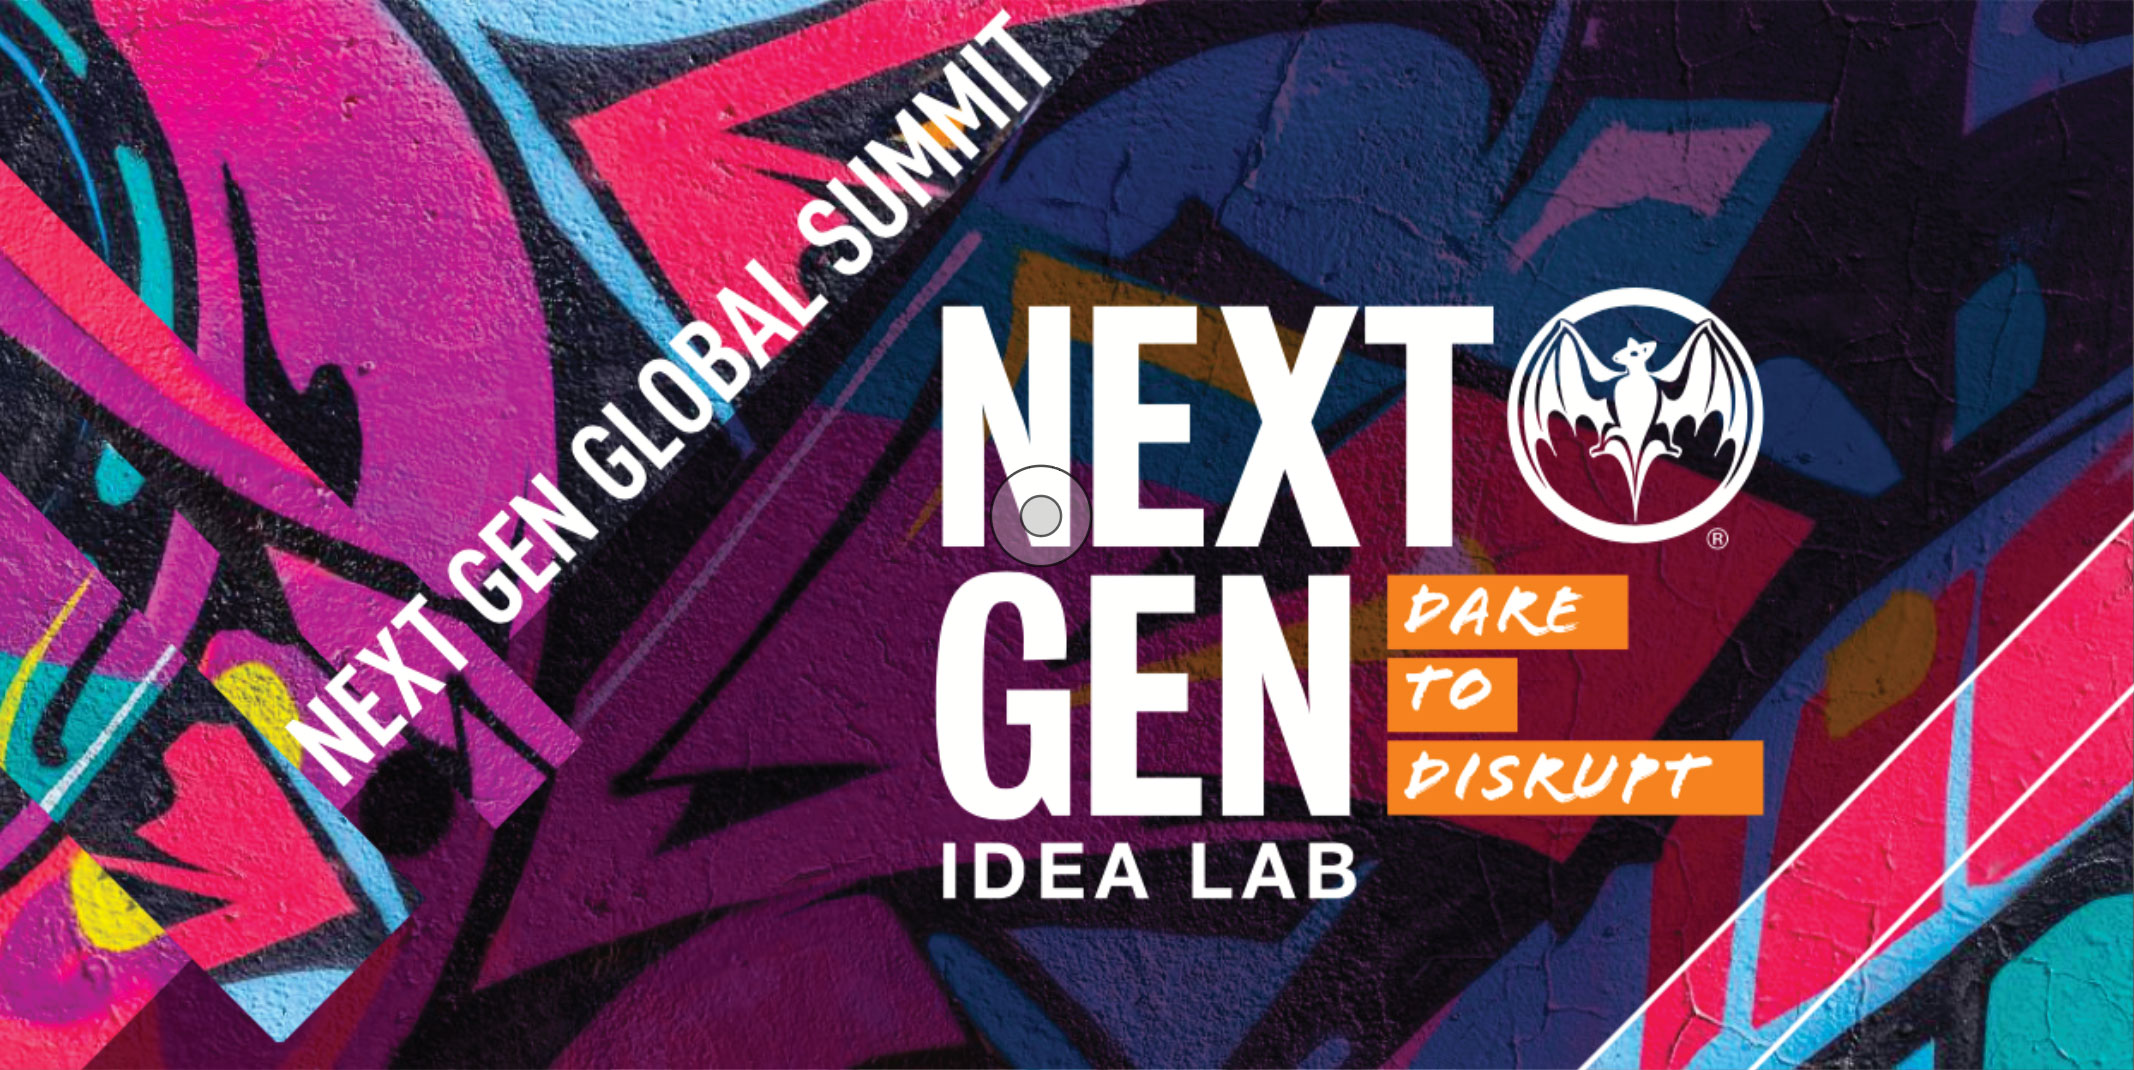 Bacardi: Next Gen Summit